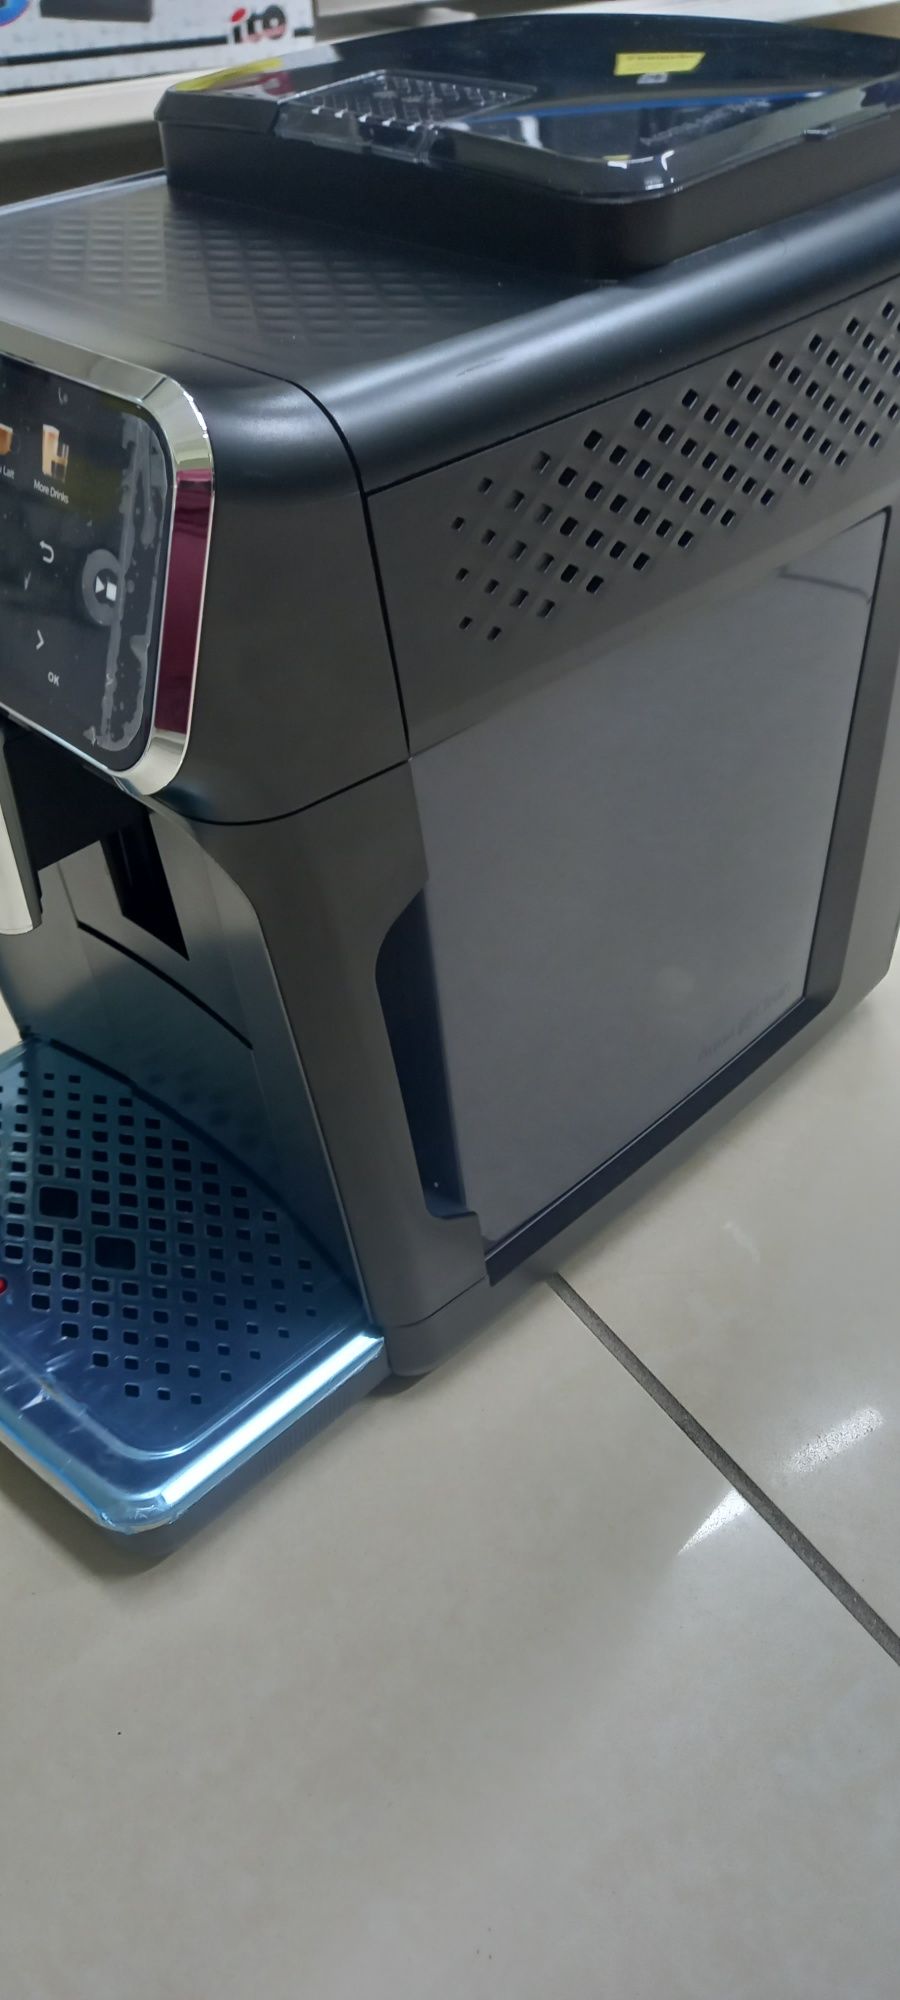 Кавомашина автоматична Philips
Тип використовуваної кави - зерновий
По